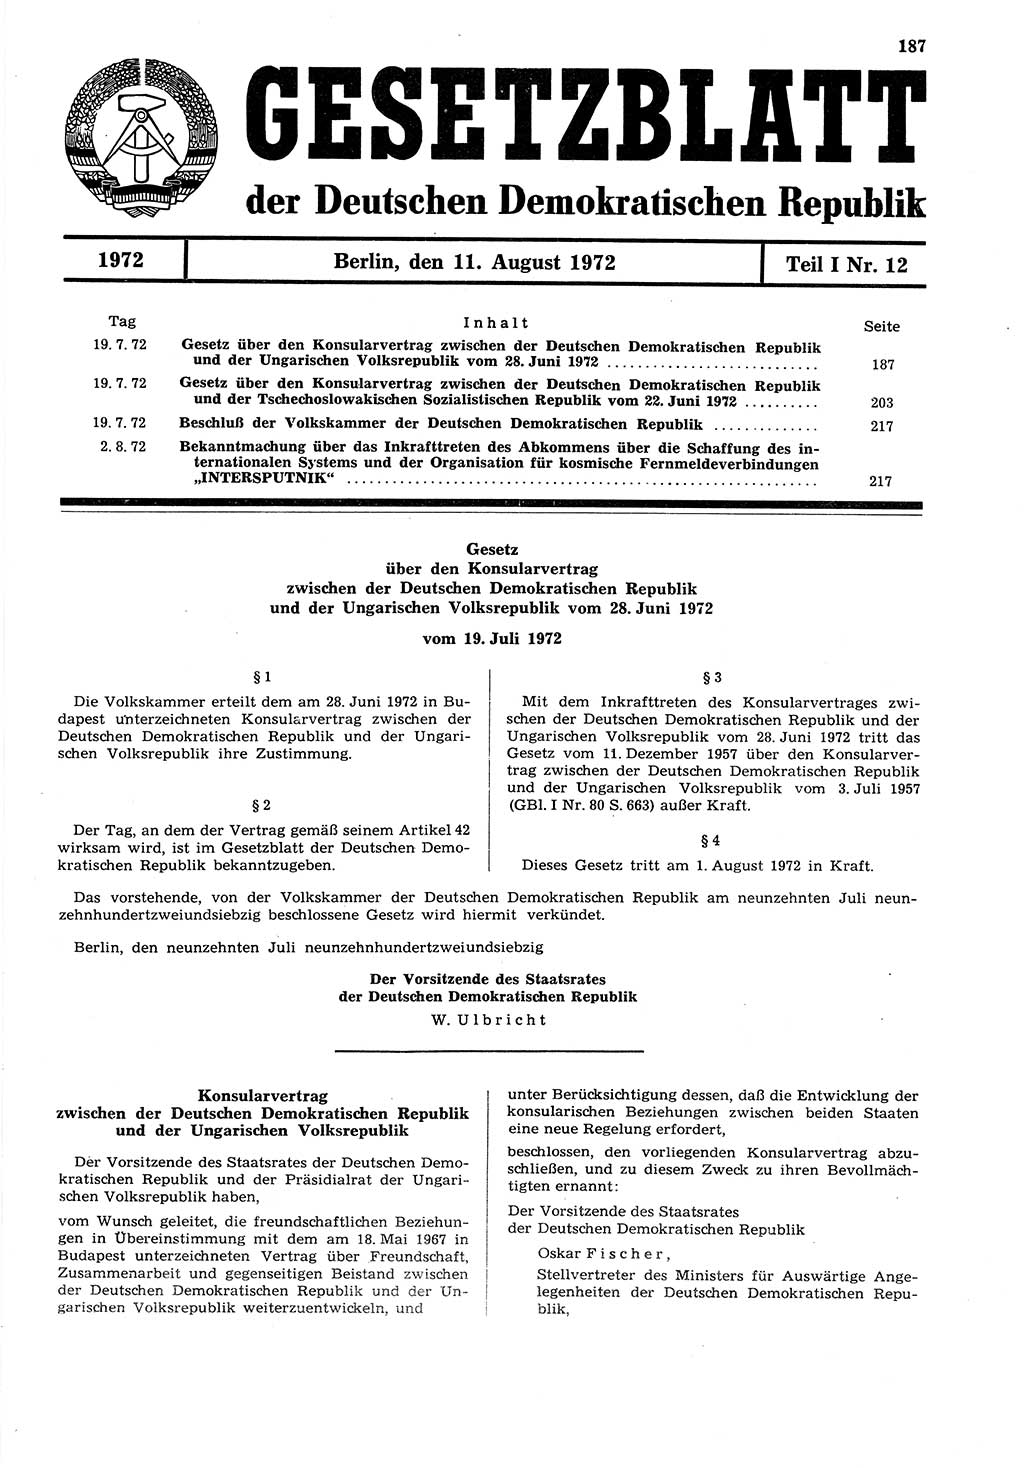 Gesetzblatt (GBl.) der Deutschen Demokratischen Republik (DDR) Teil Ⅰ 1972, Seite 187 (GBl. DDR Ⅰ 1972, S. 187)